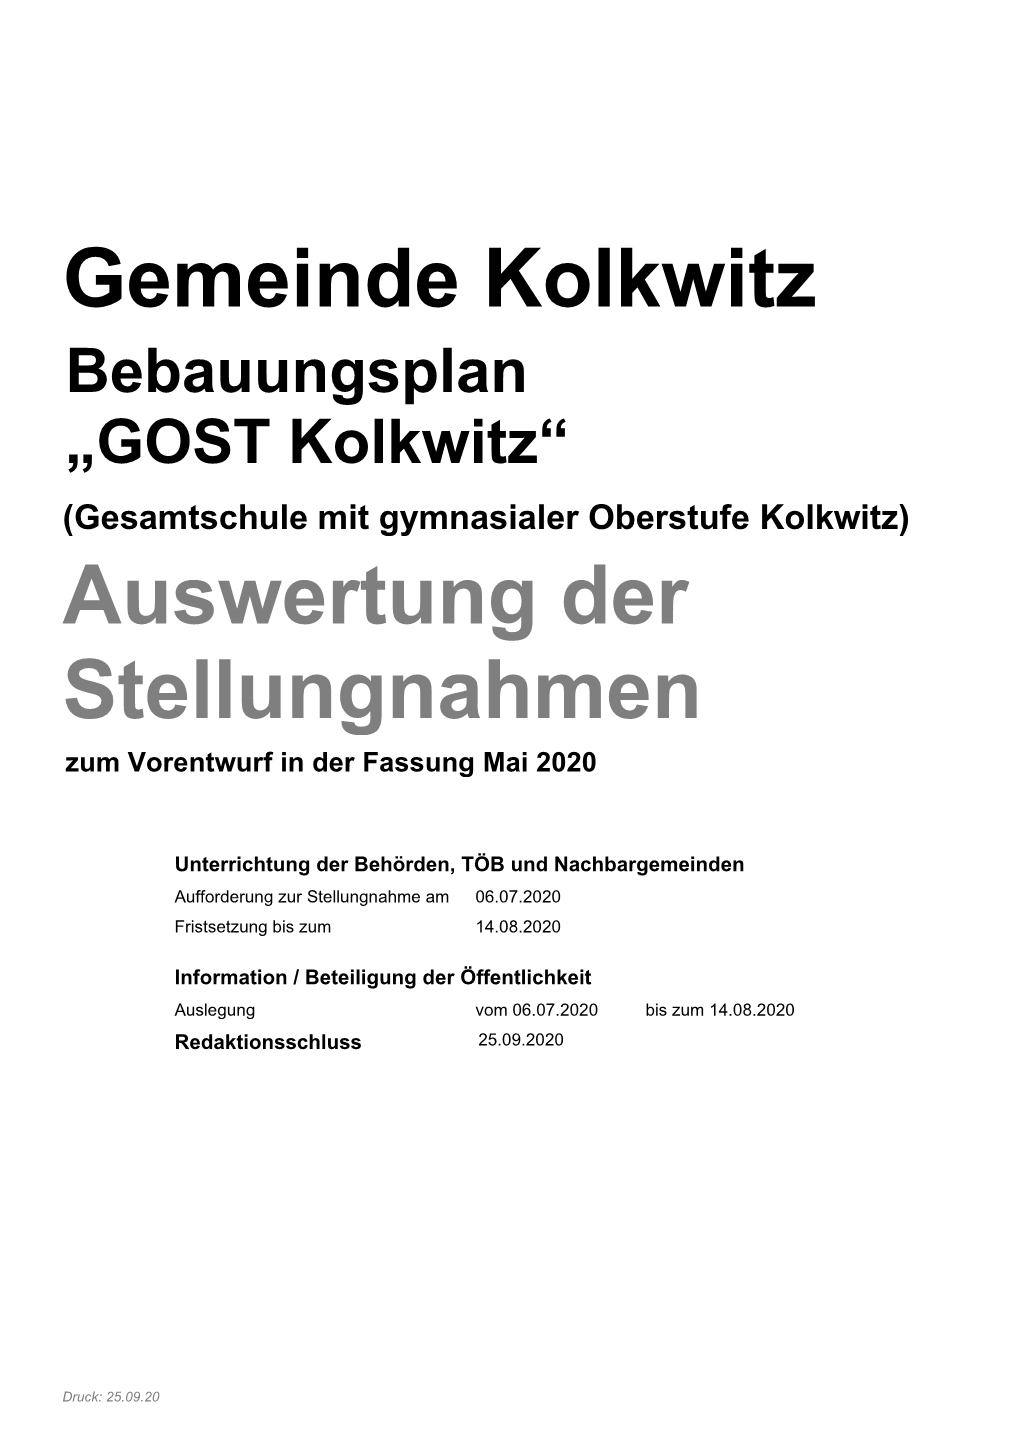 Gemeinde Kolkwitz Auswertung Der Stellungnahmen